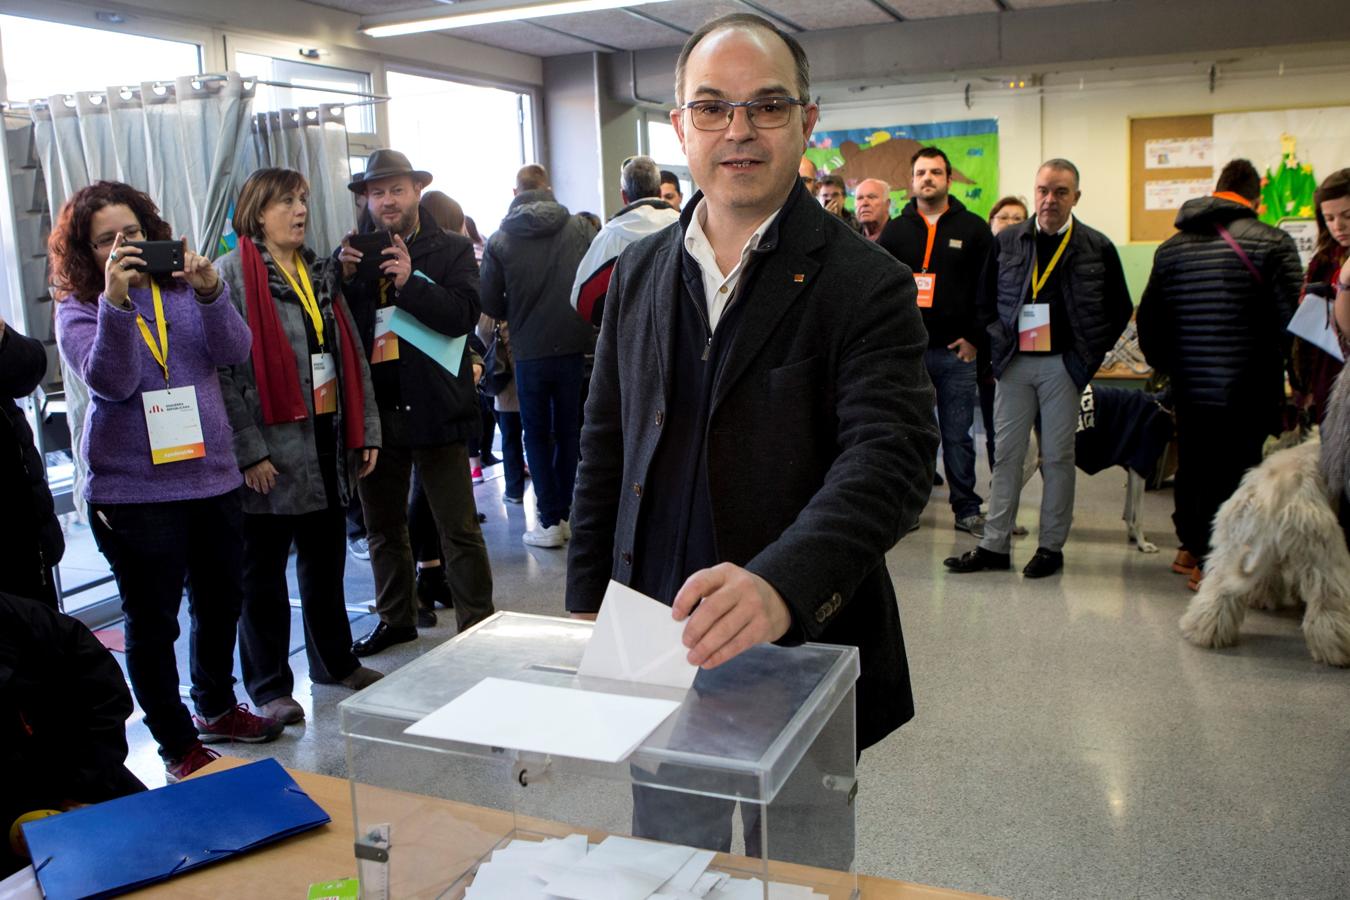 El exconseller Jordi Turull y numero cuatro por la lista de JxCat, vota en el colegio Lluis Piquer de Parets del Vallés durante la jornada electoral del 21-D. 